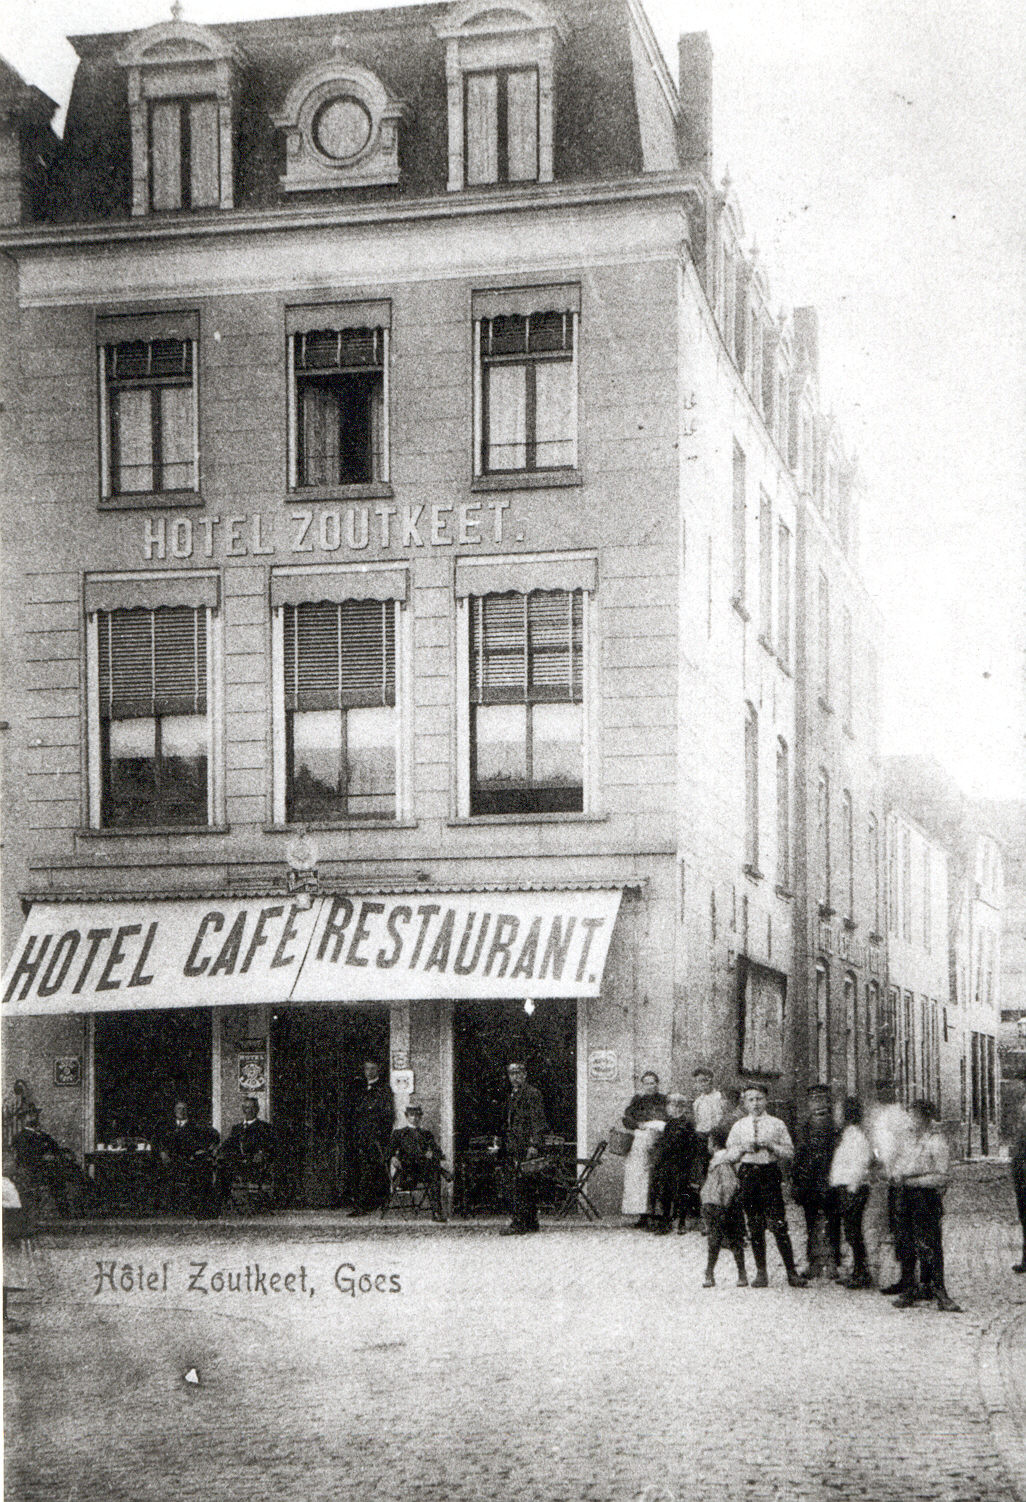 Hotel De Zoutkeet aan de Grote Markt, 1900.